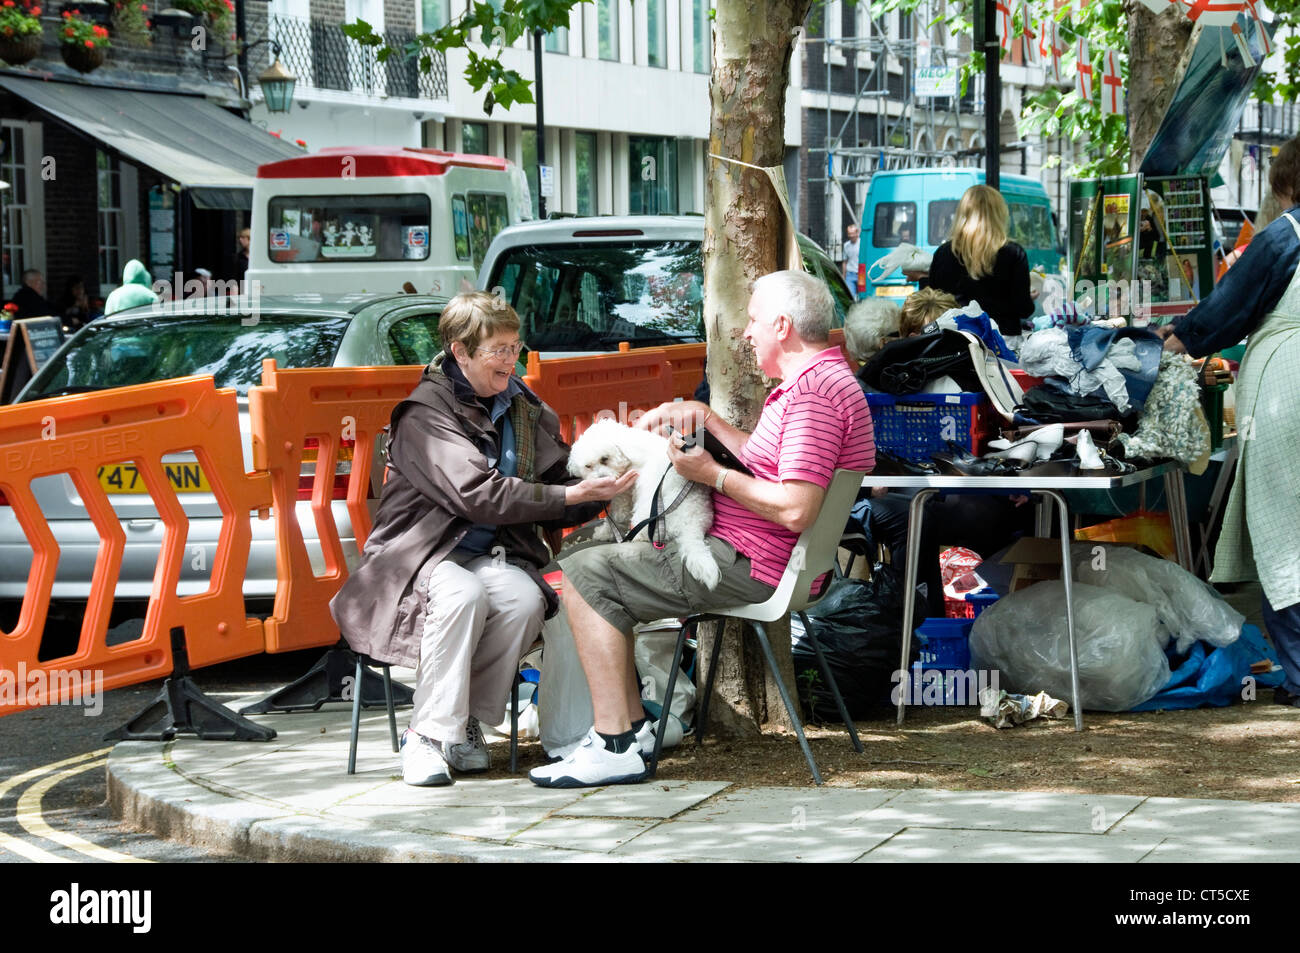 Couple avec leur petit chien blanc assis sur des chaises sur le trottoir à Queen Square, juste Bloomsbury Londres Angleterre Royaume-uni Banque D'Images